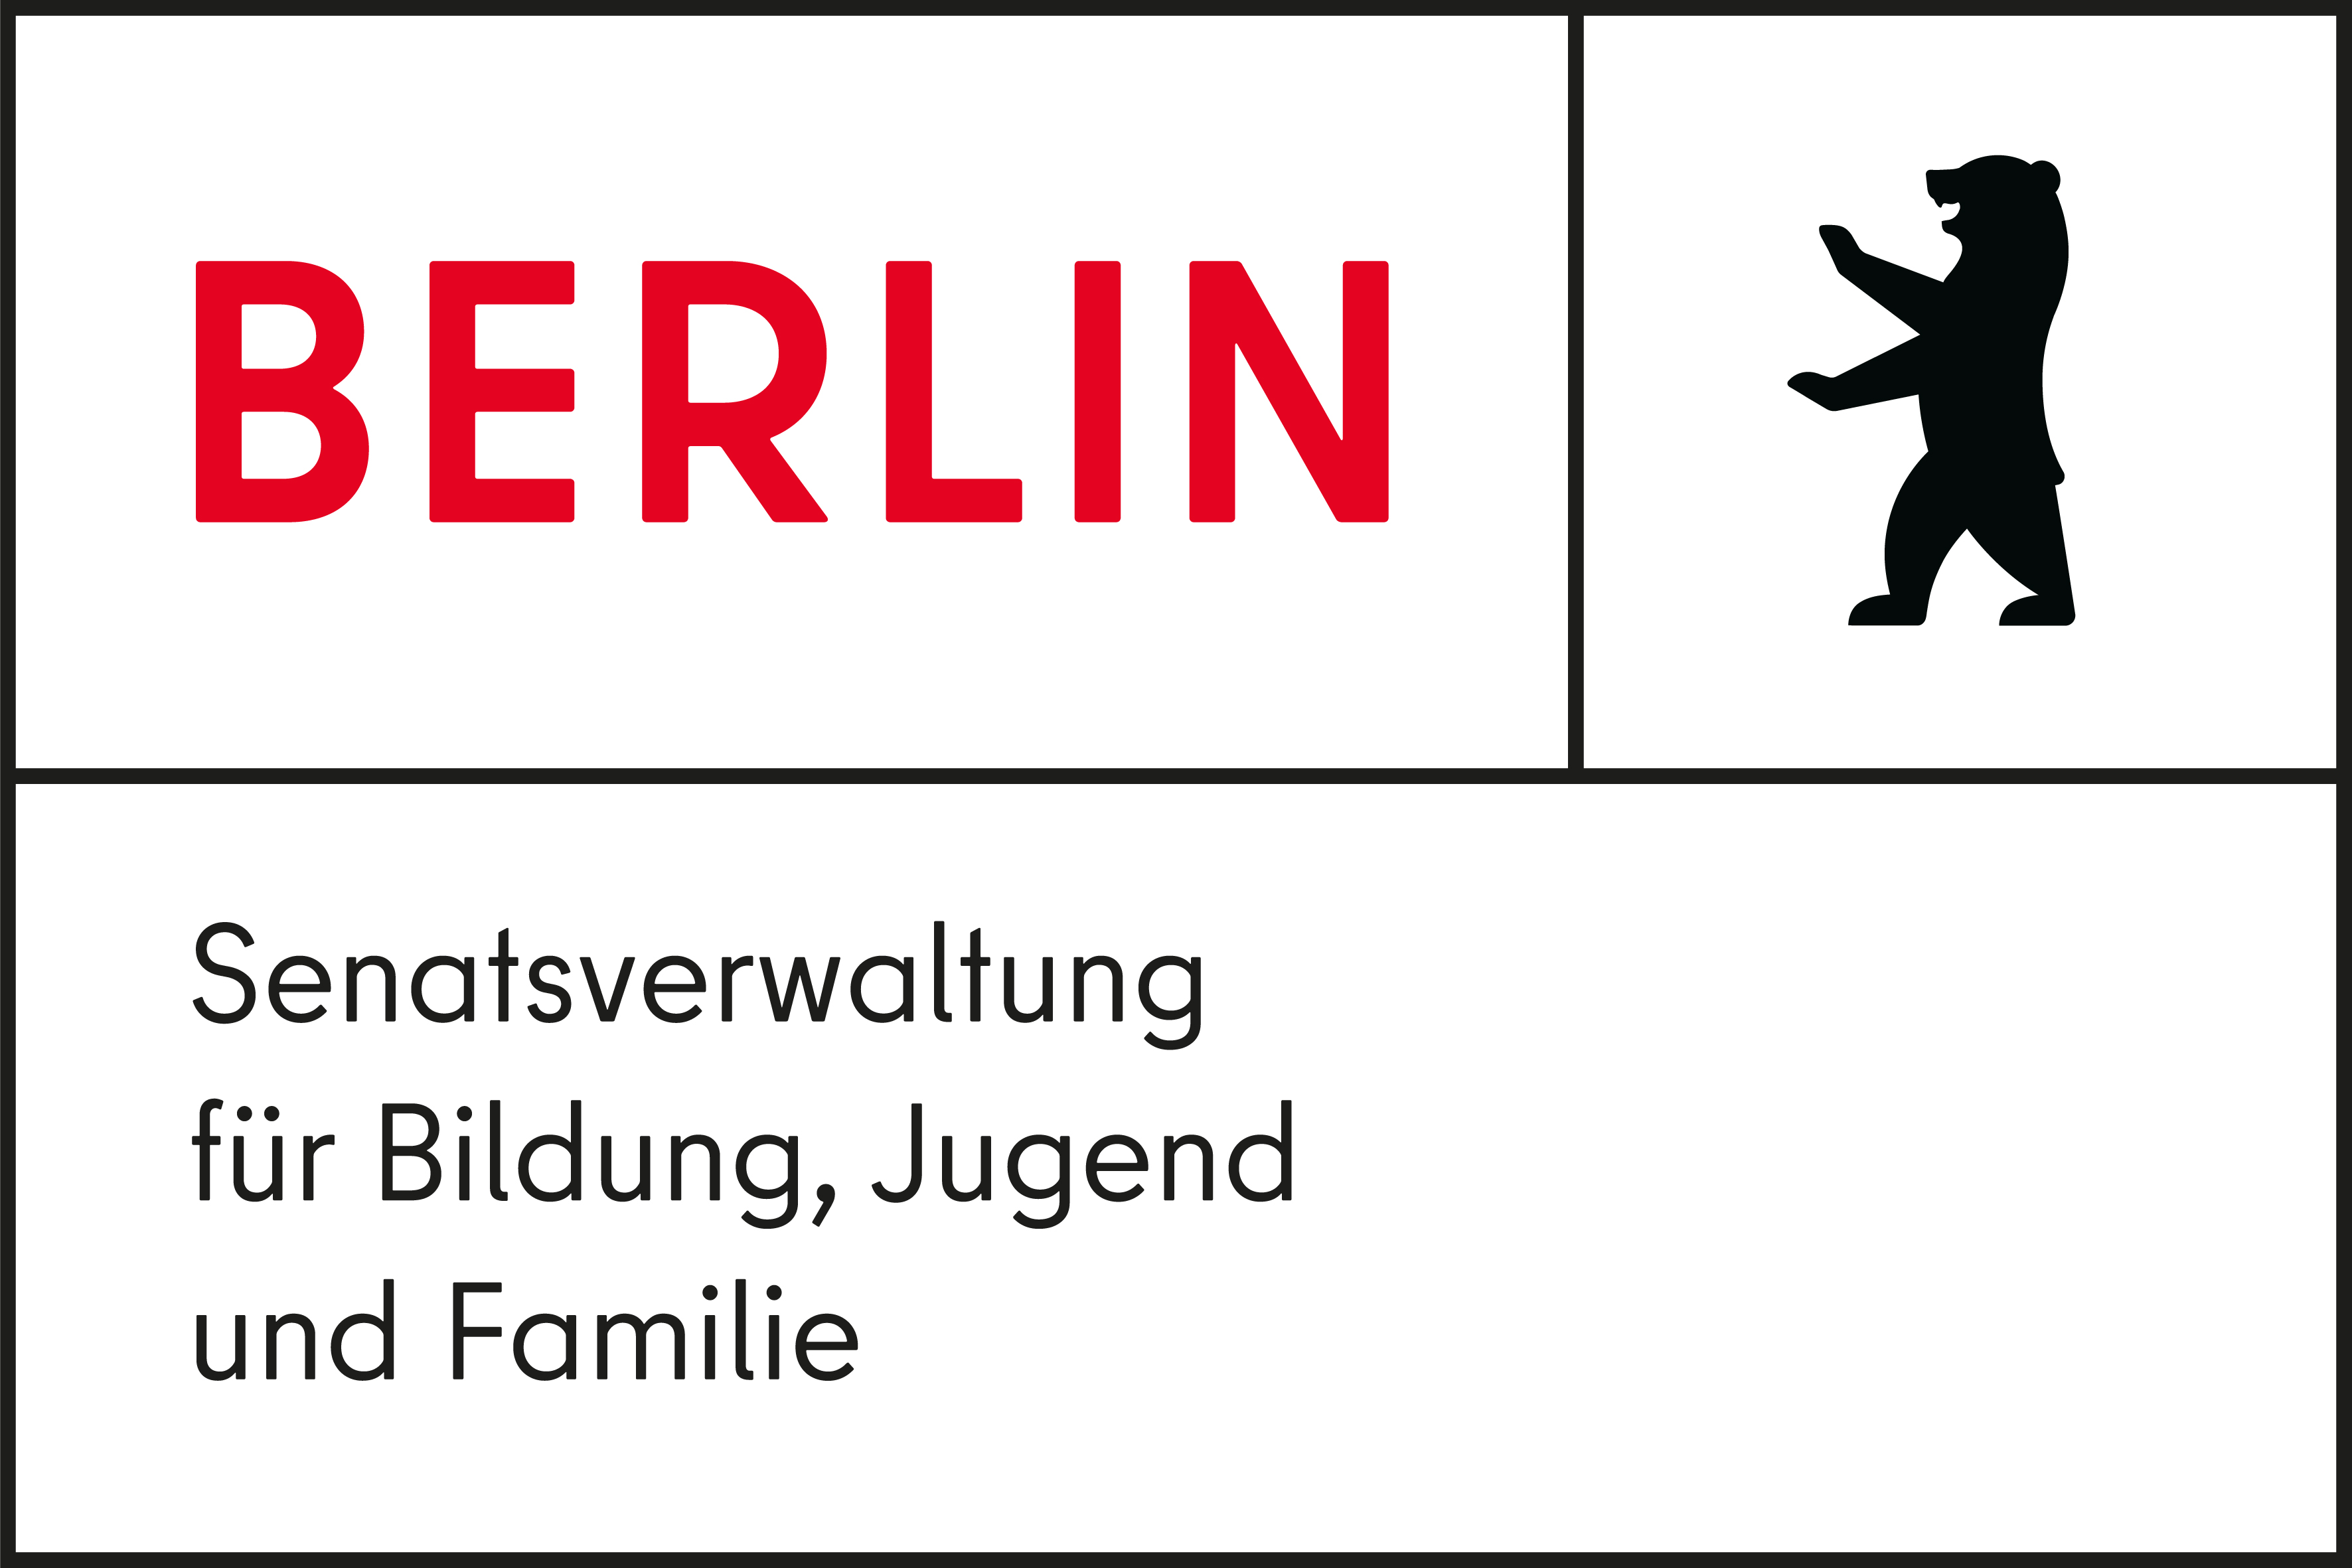 Senatsverwaltung für Bildung, Jugend und Familie, Berlin